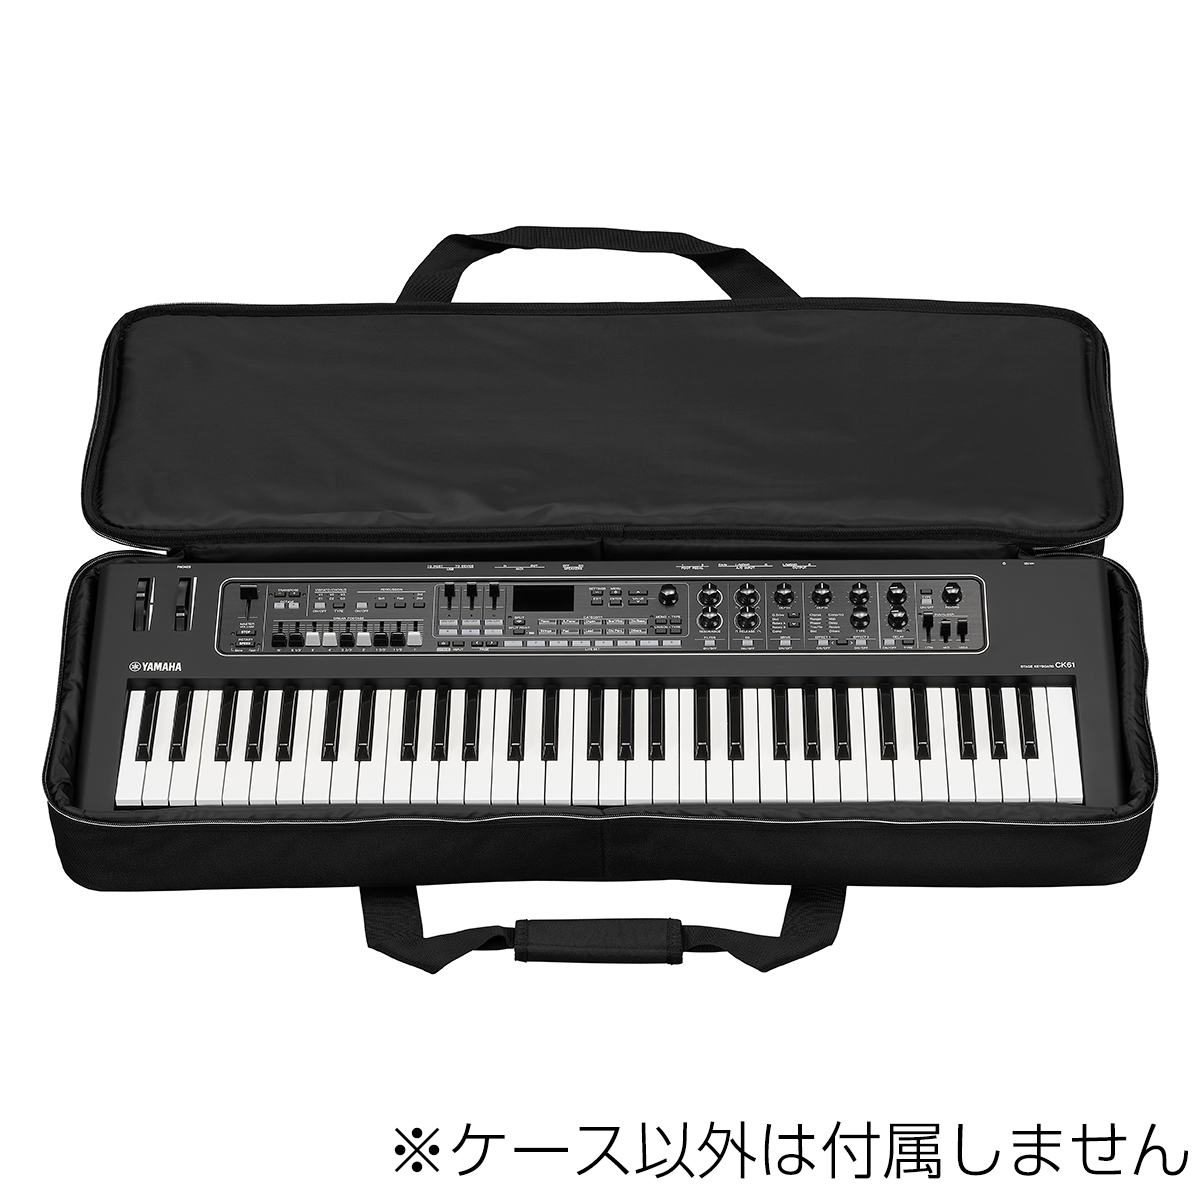 YAMAHA SC-DE61 CK61用 ステージキーボード ソフトケース 61鍵盤